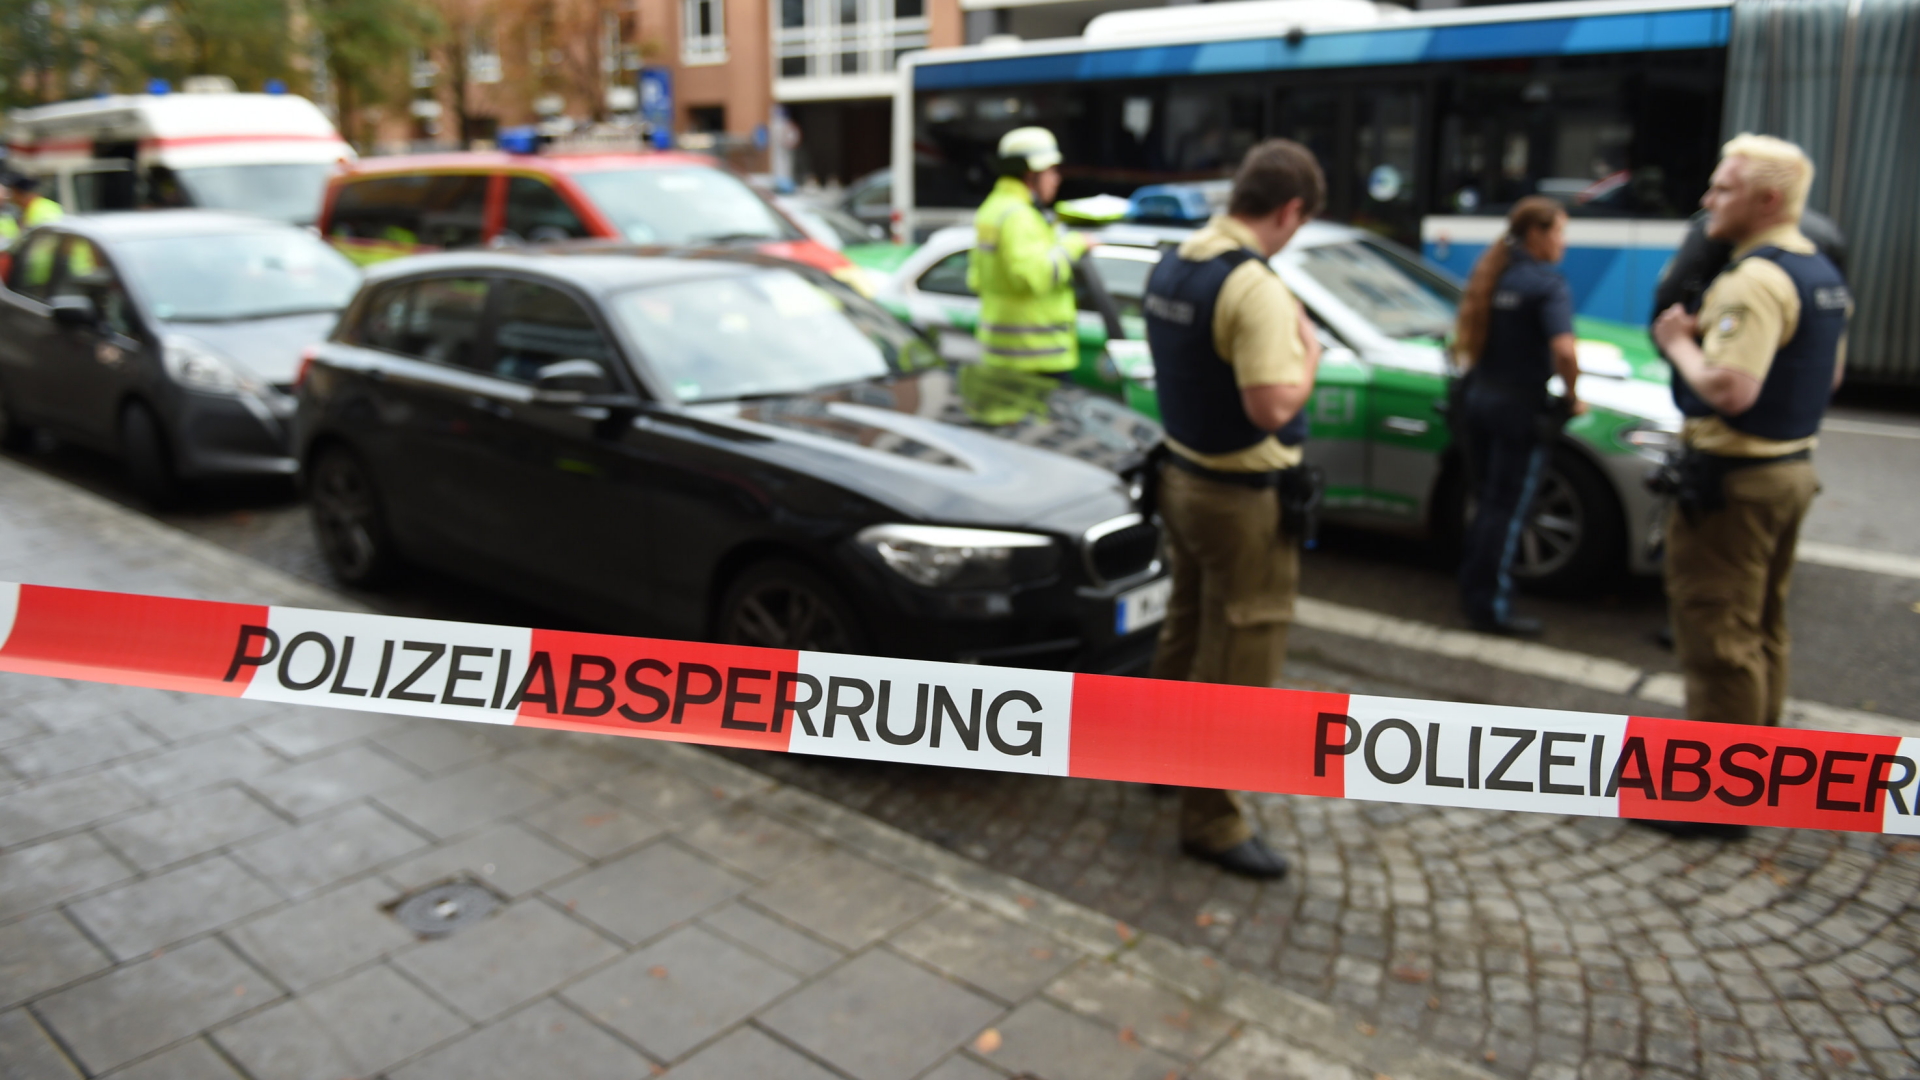 Polizeiabsperrung nach Messerattacke in München | dpa